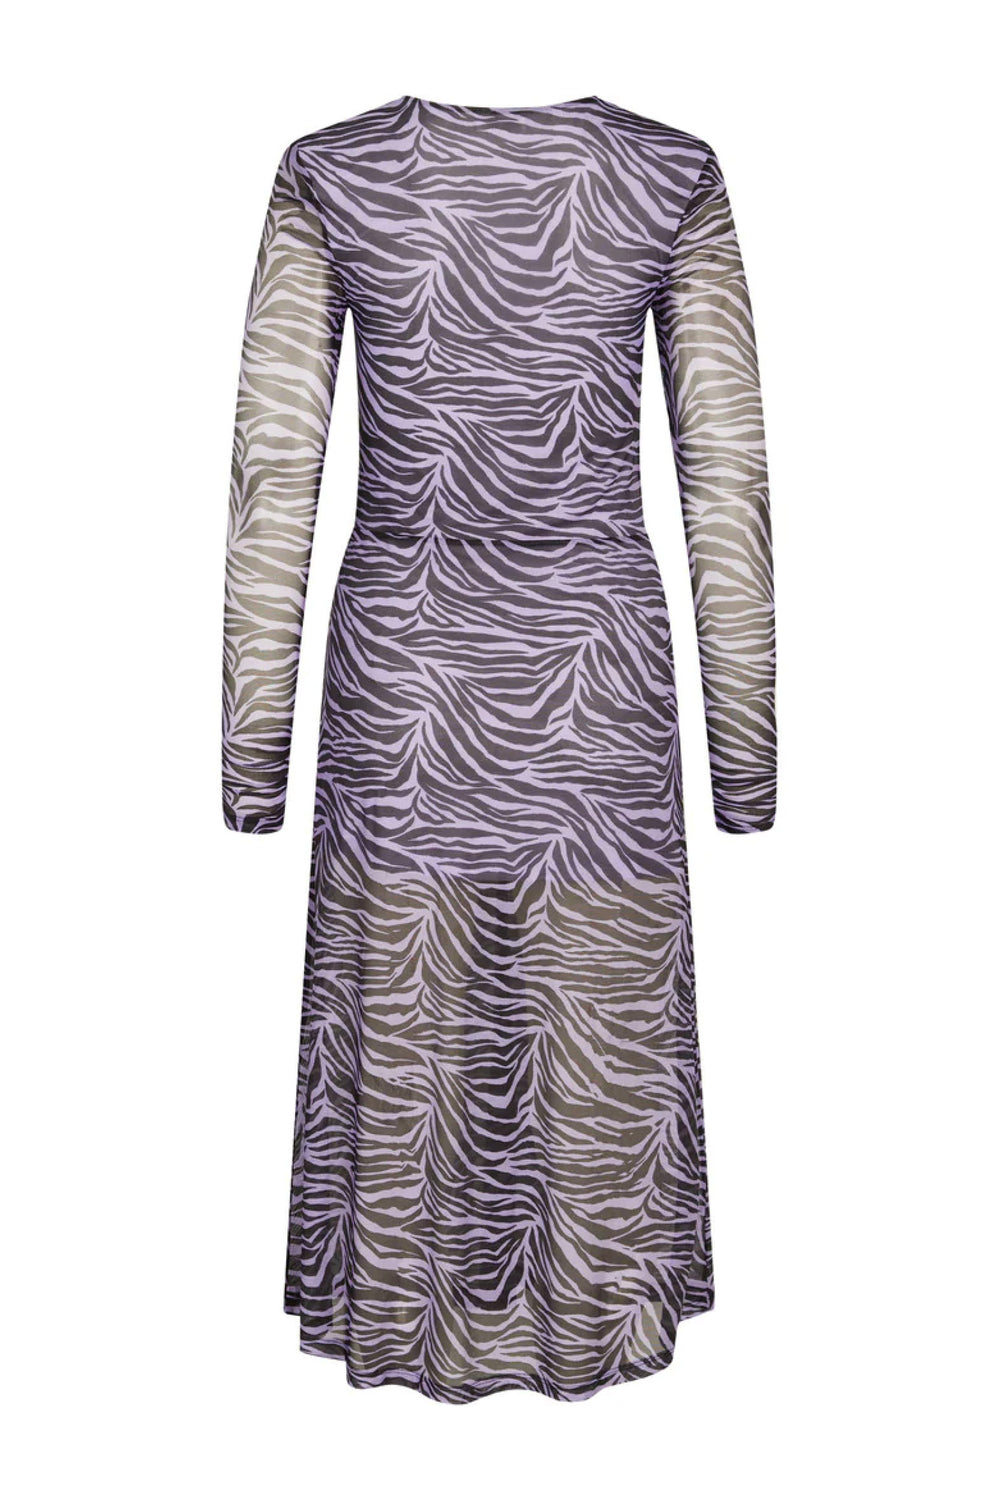 BZR MelaBZWrapla dress Dress Lavender